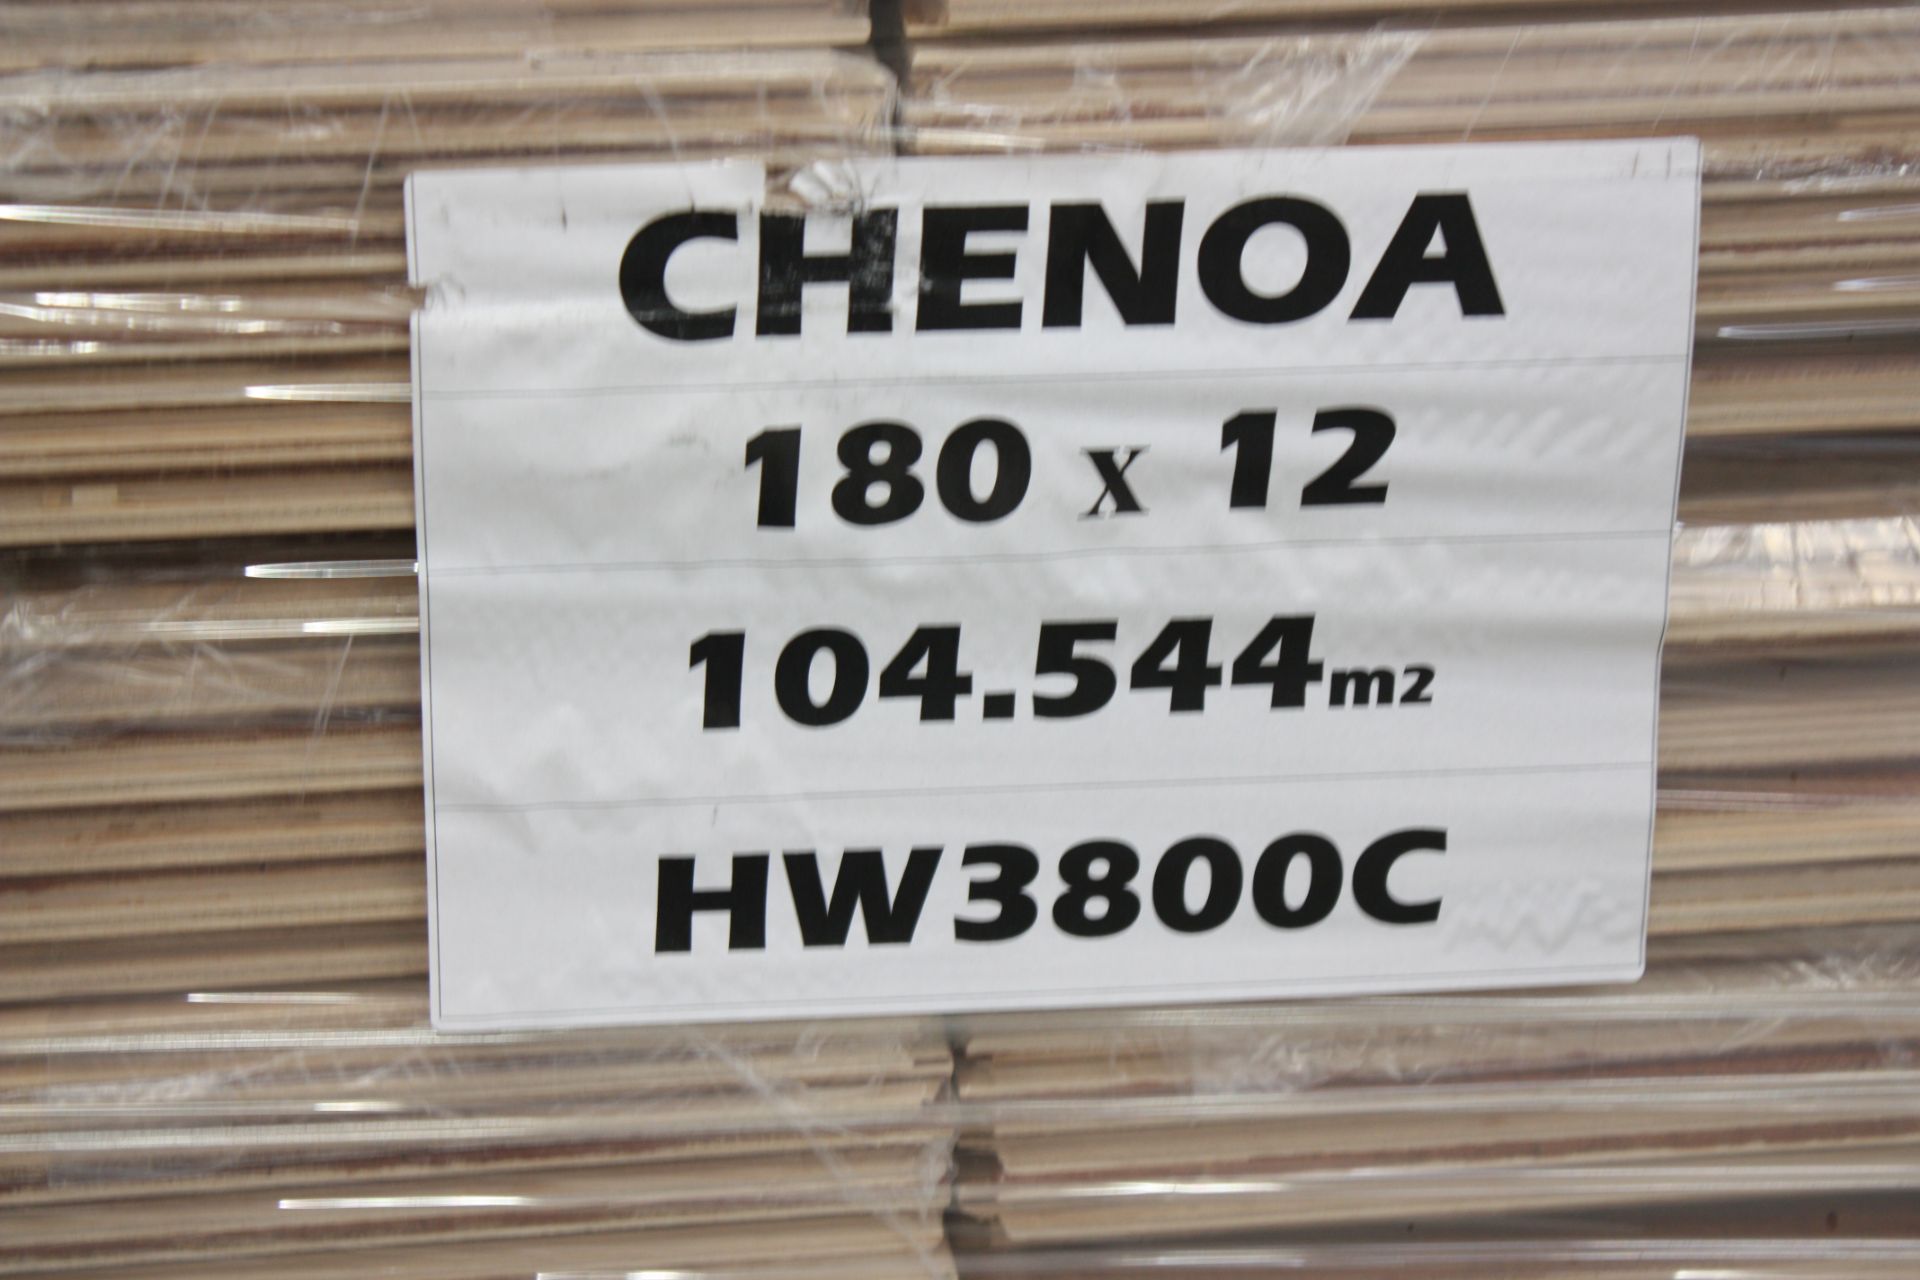 European Oak Flooring "Chenoa" colour, 109.3sqm - Bild 3 aus 5